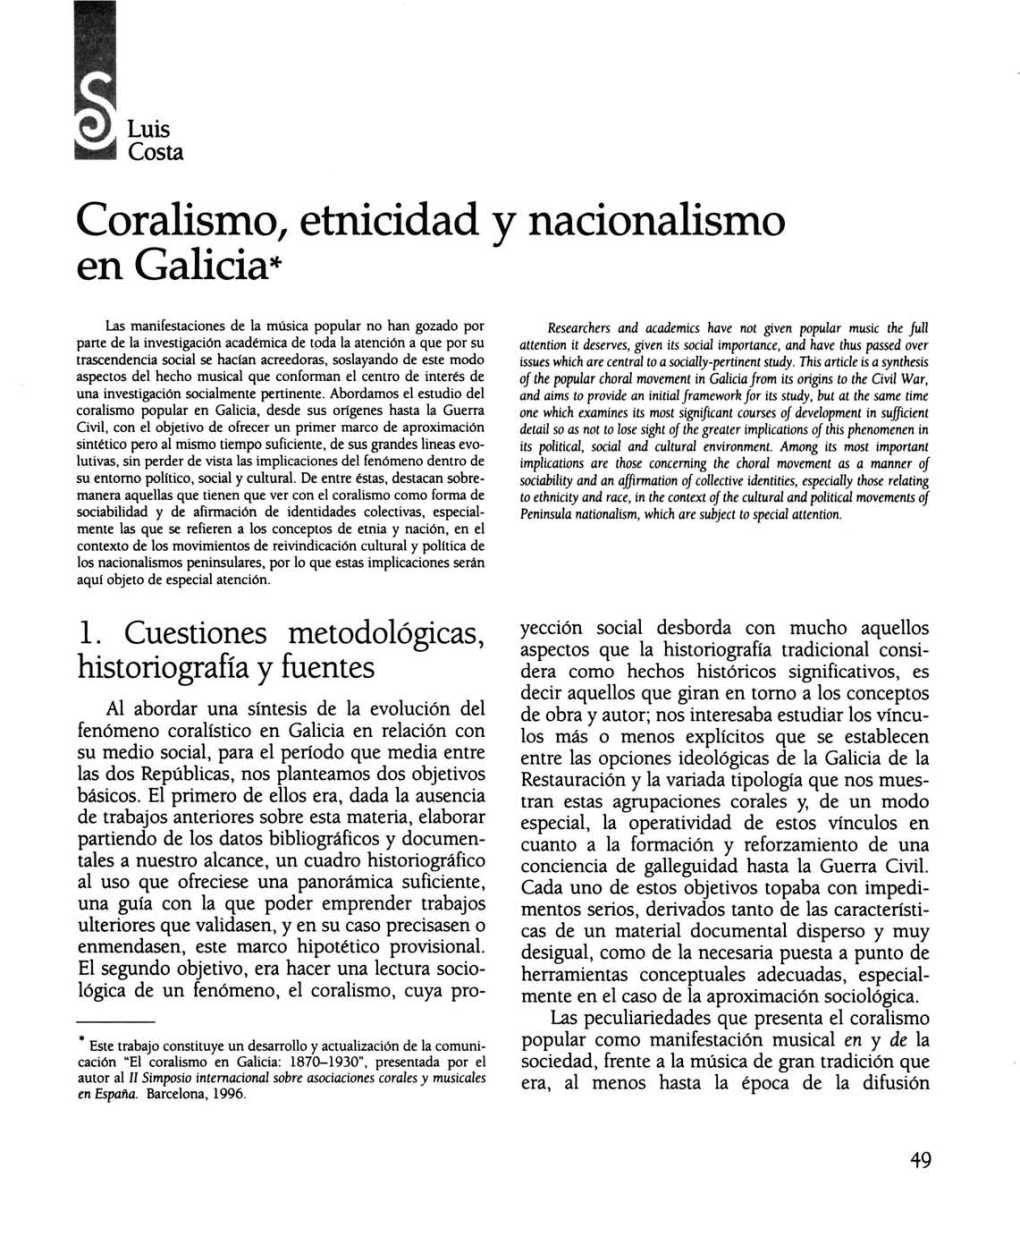 Coralismo, Etnicidad Y Nacionalismo En Galicia*